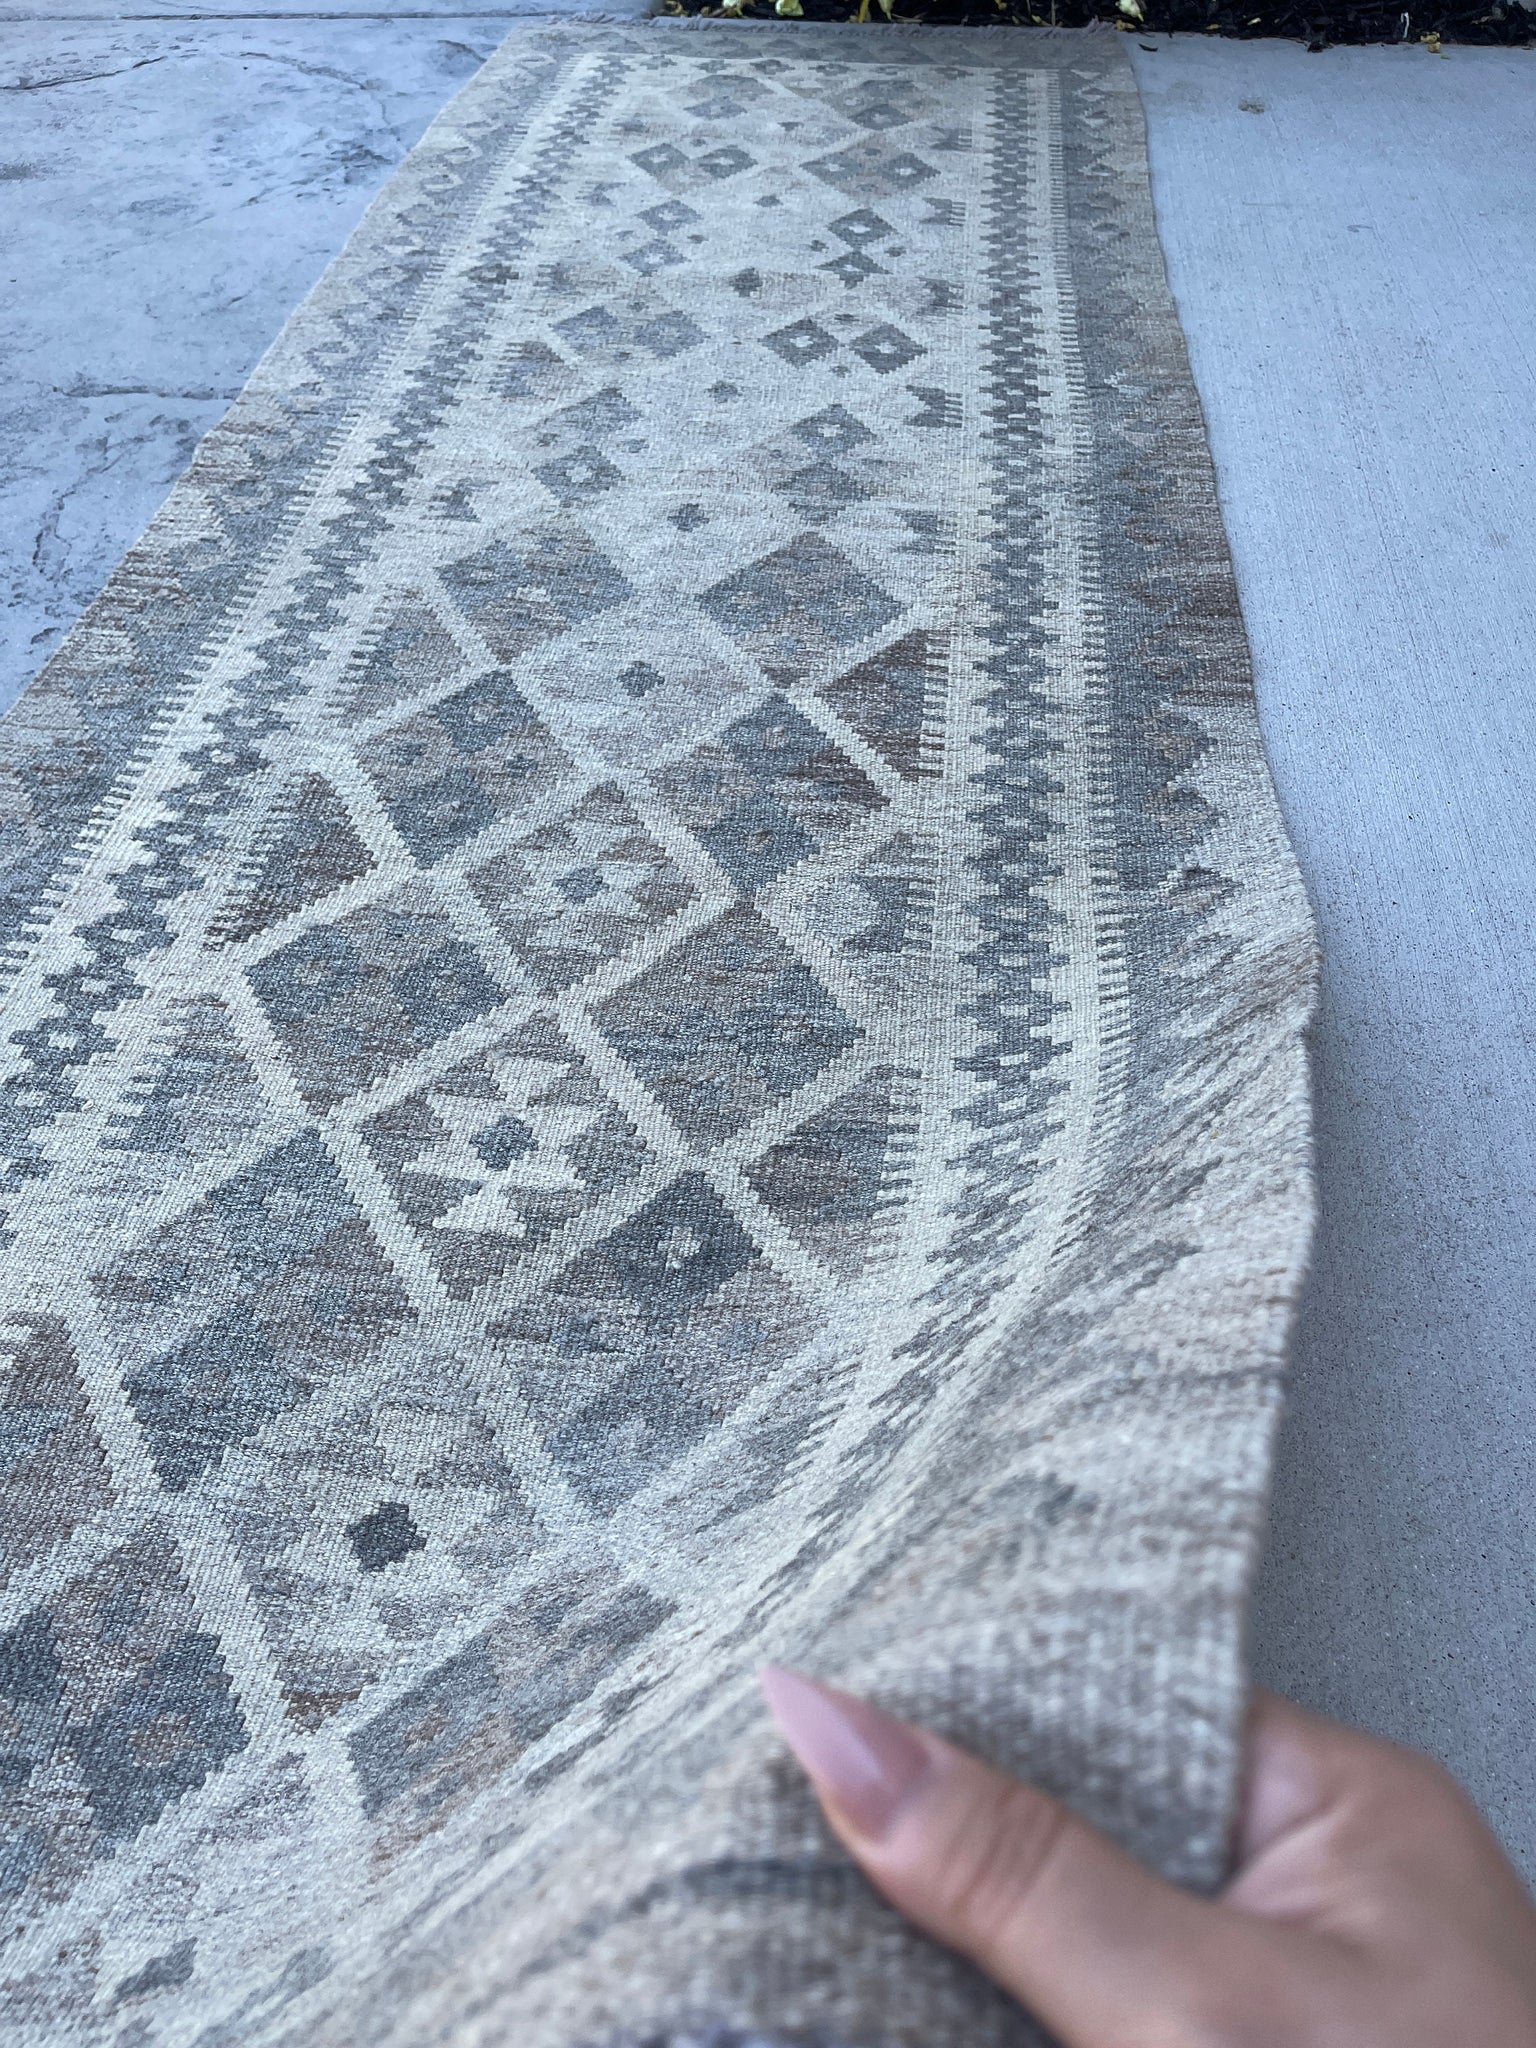 3x8 (90x245) Handmade Afghan Kilim Runner Rug | Light Grey Gray Beige Light Brown | Flatweave Flat Weave Tribal Turkish Moroccan Oriental